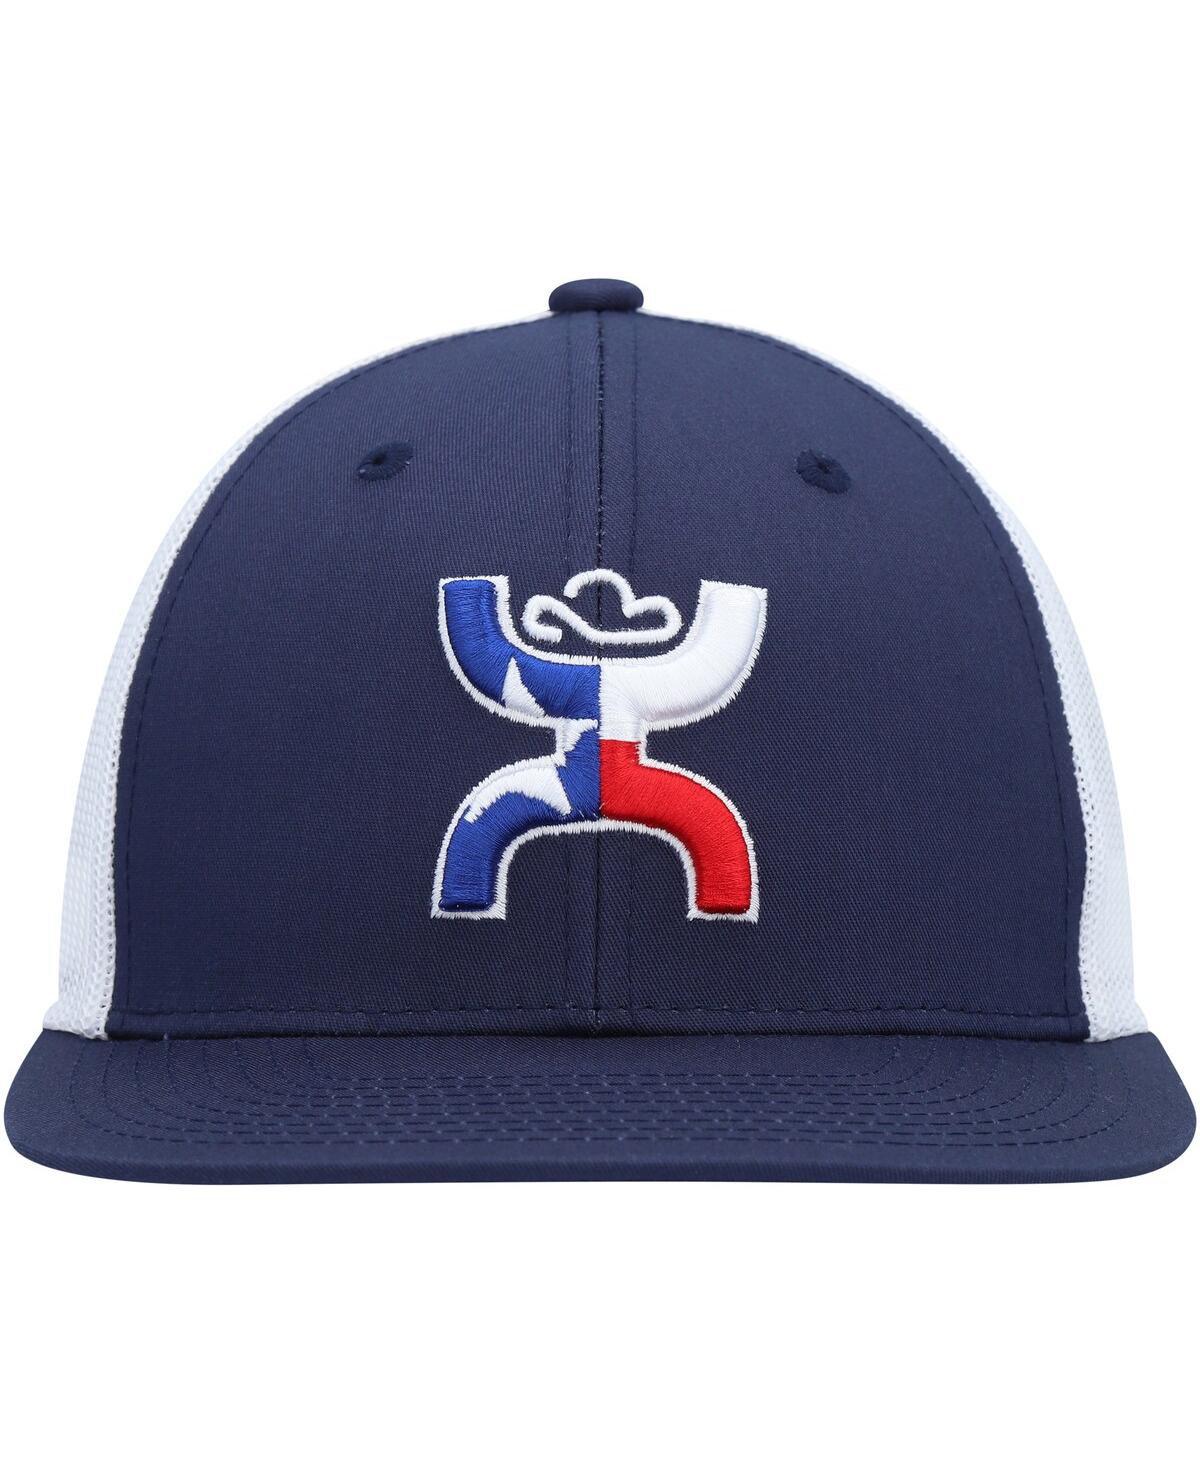 Shop Hooey Men's  Navy Texican Trucker Snapback Hat